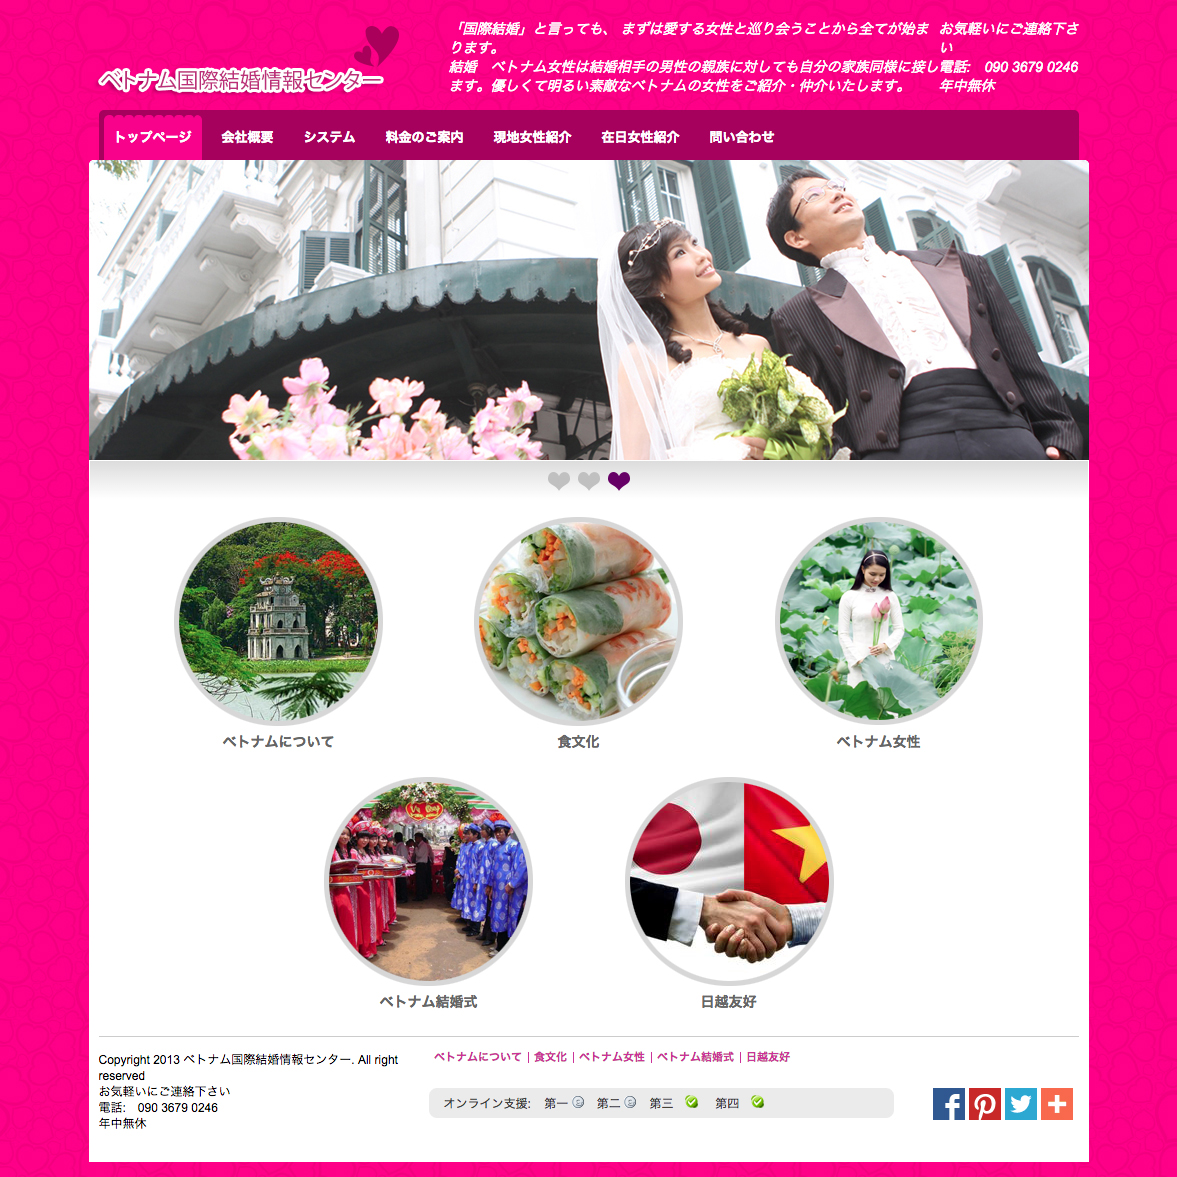 Thiết kế web môi giới hôn nhân tại Nhật